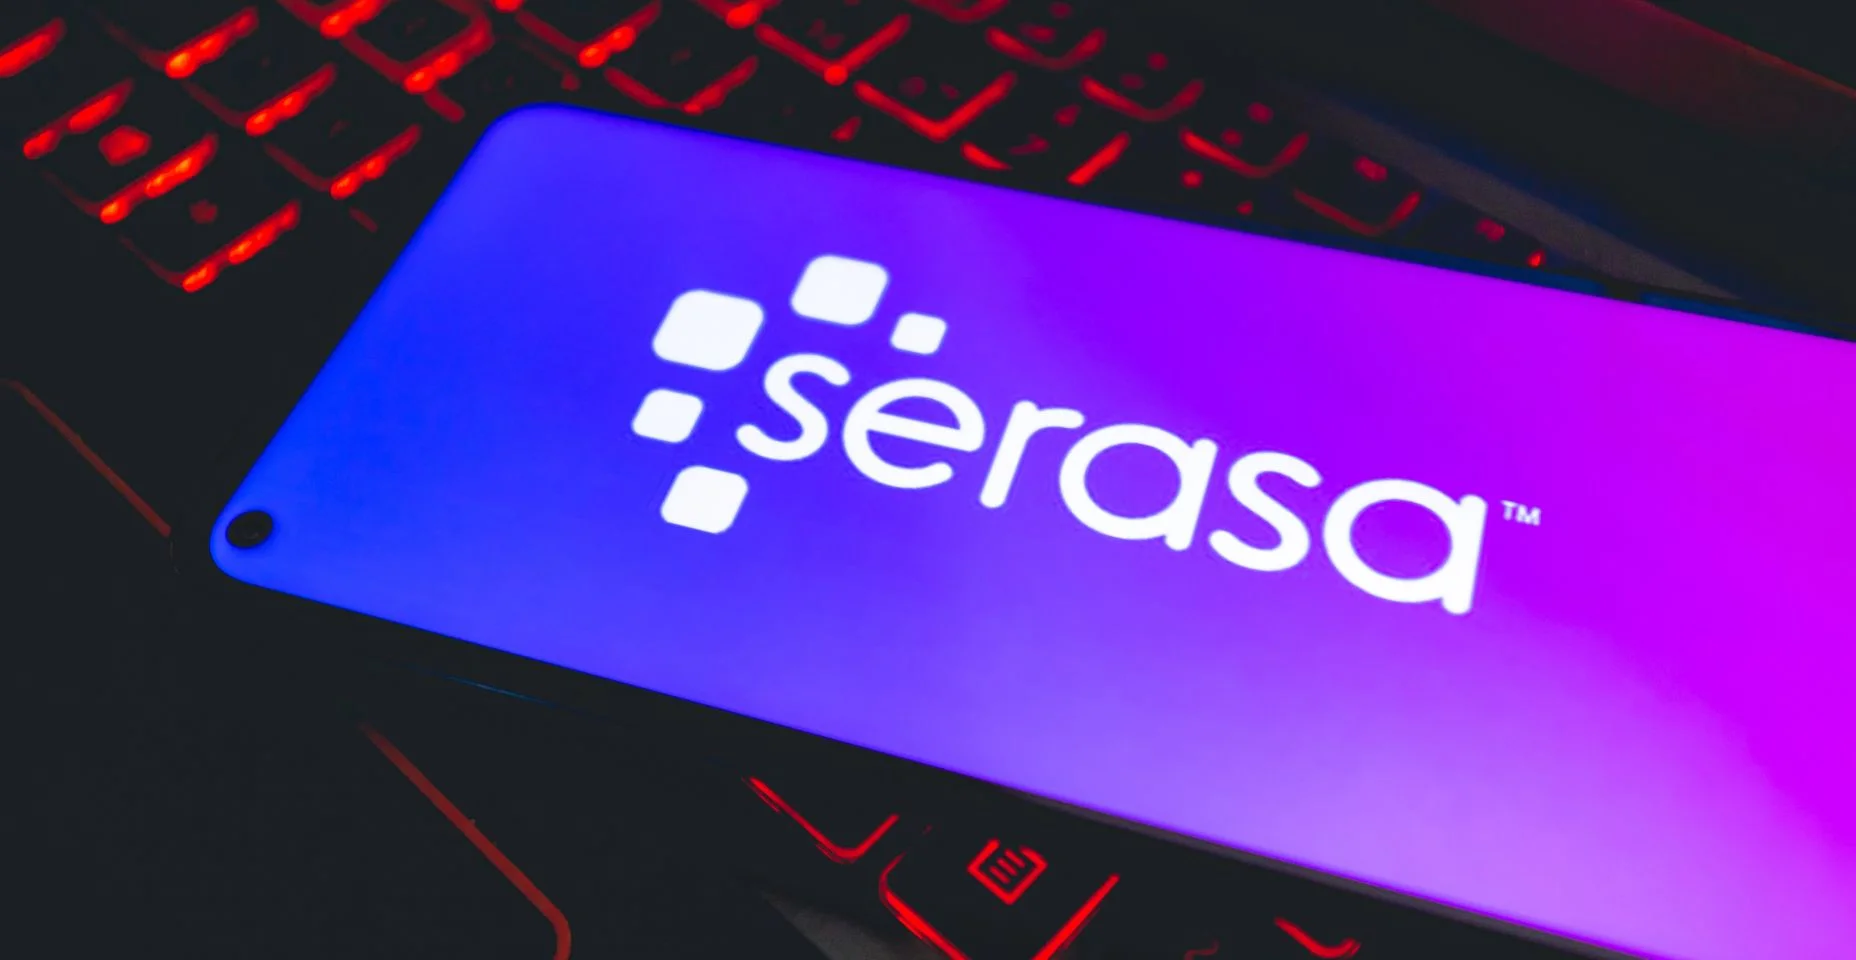 Um telefone celular com a logo da empresa brasileira Serasa sobre um teclado de notebook.